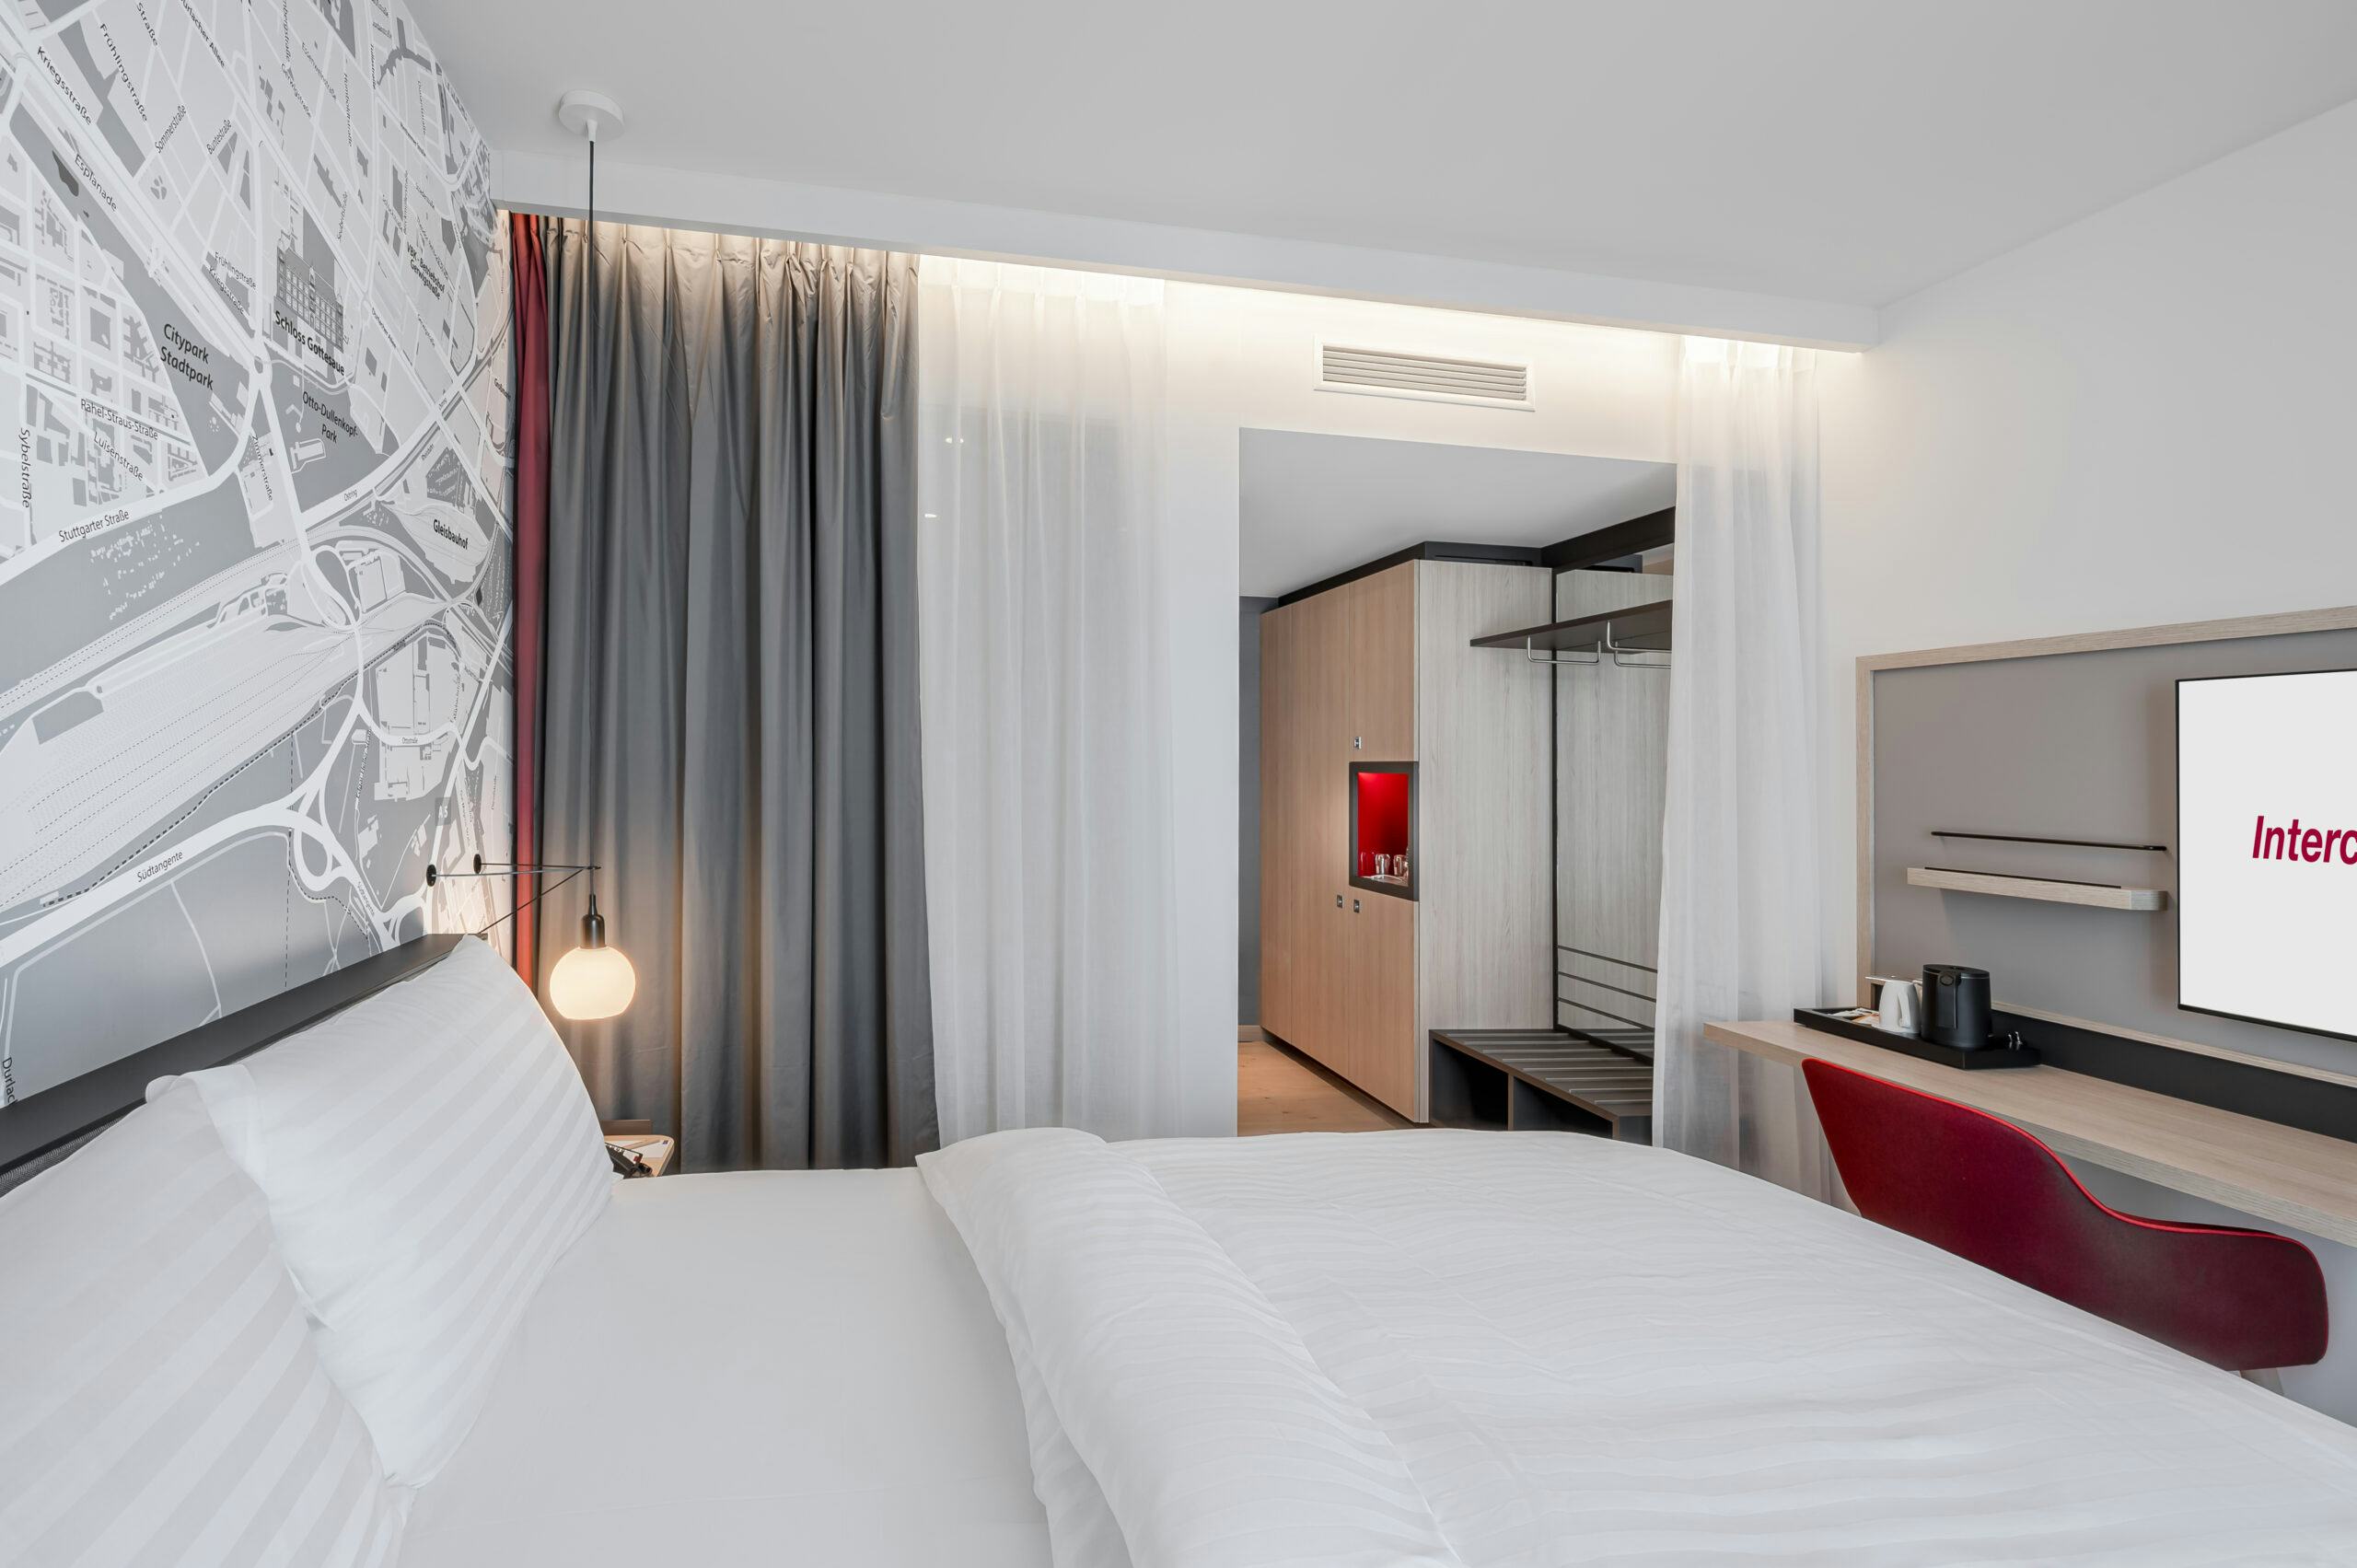 IntercityHotels zijn moderne en stijlvolle hotels met het comfort van de hogere middenklasse. 